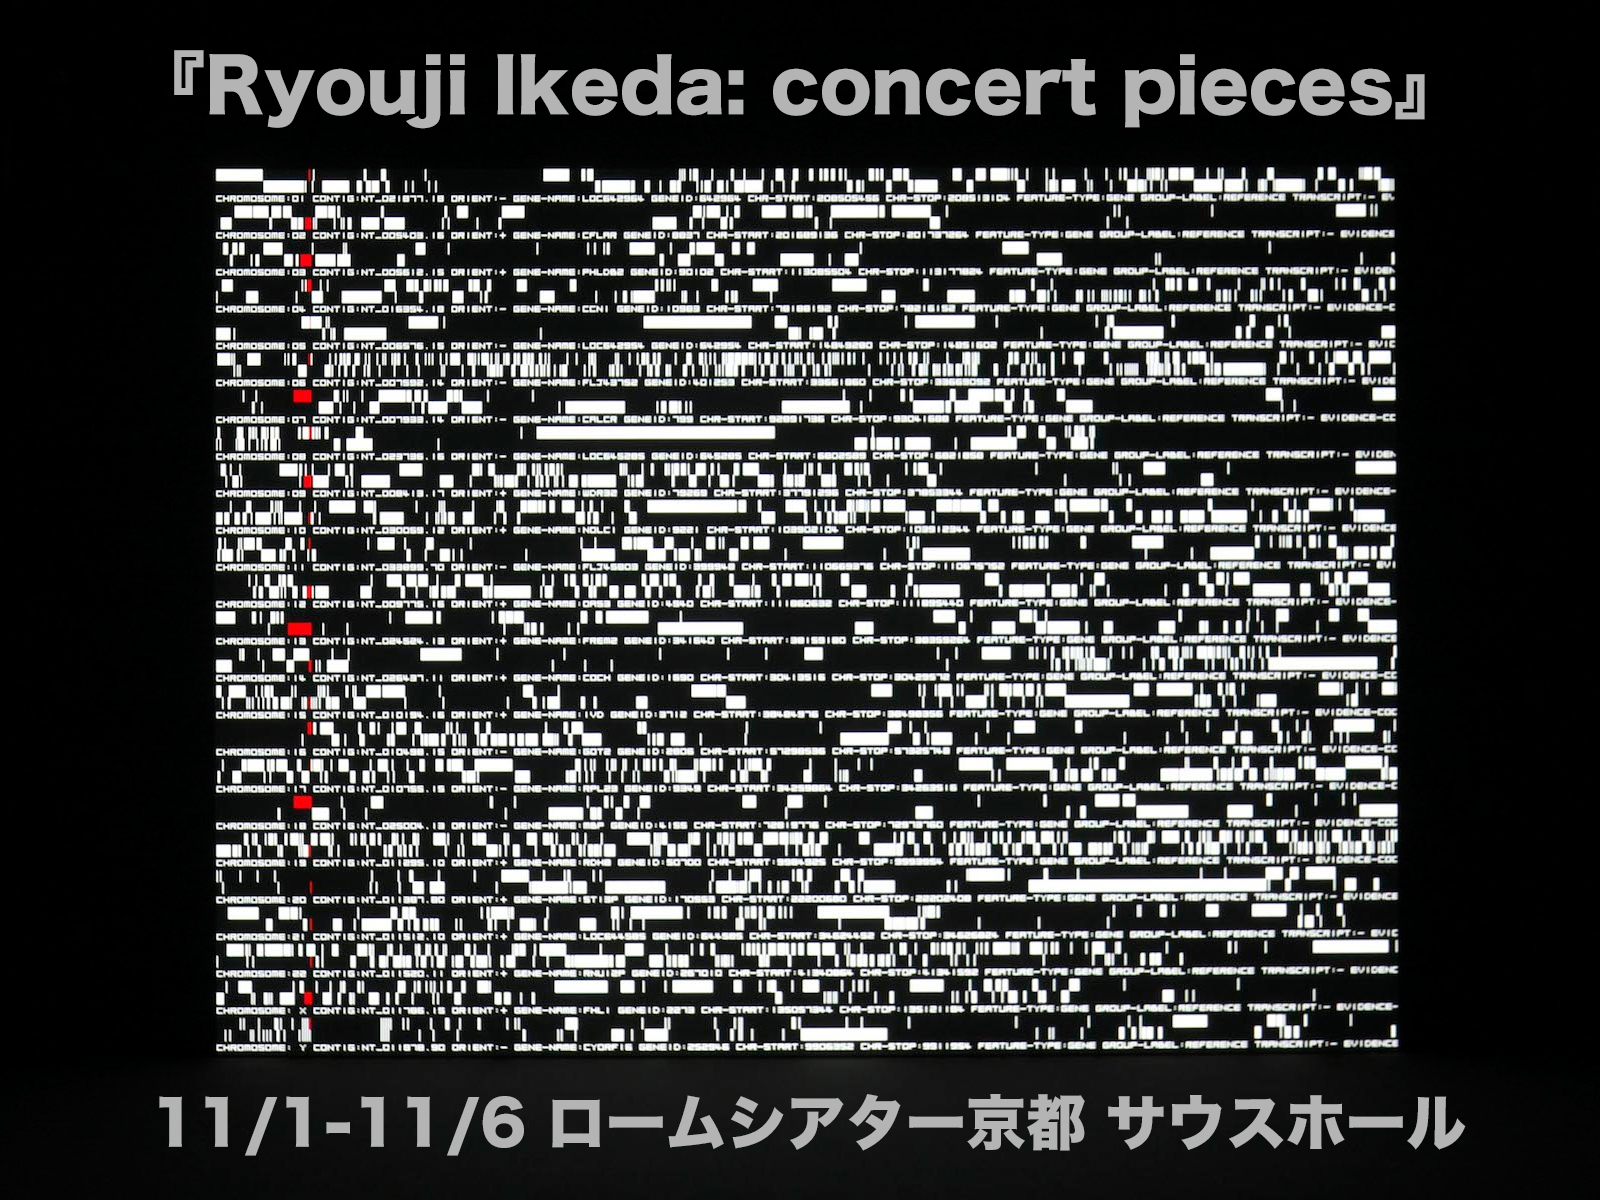 Ryouji Ikeda: concert pieces